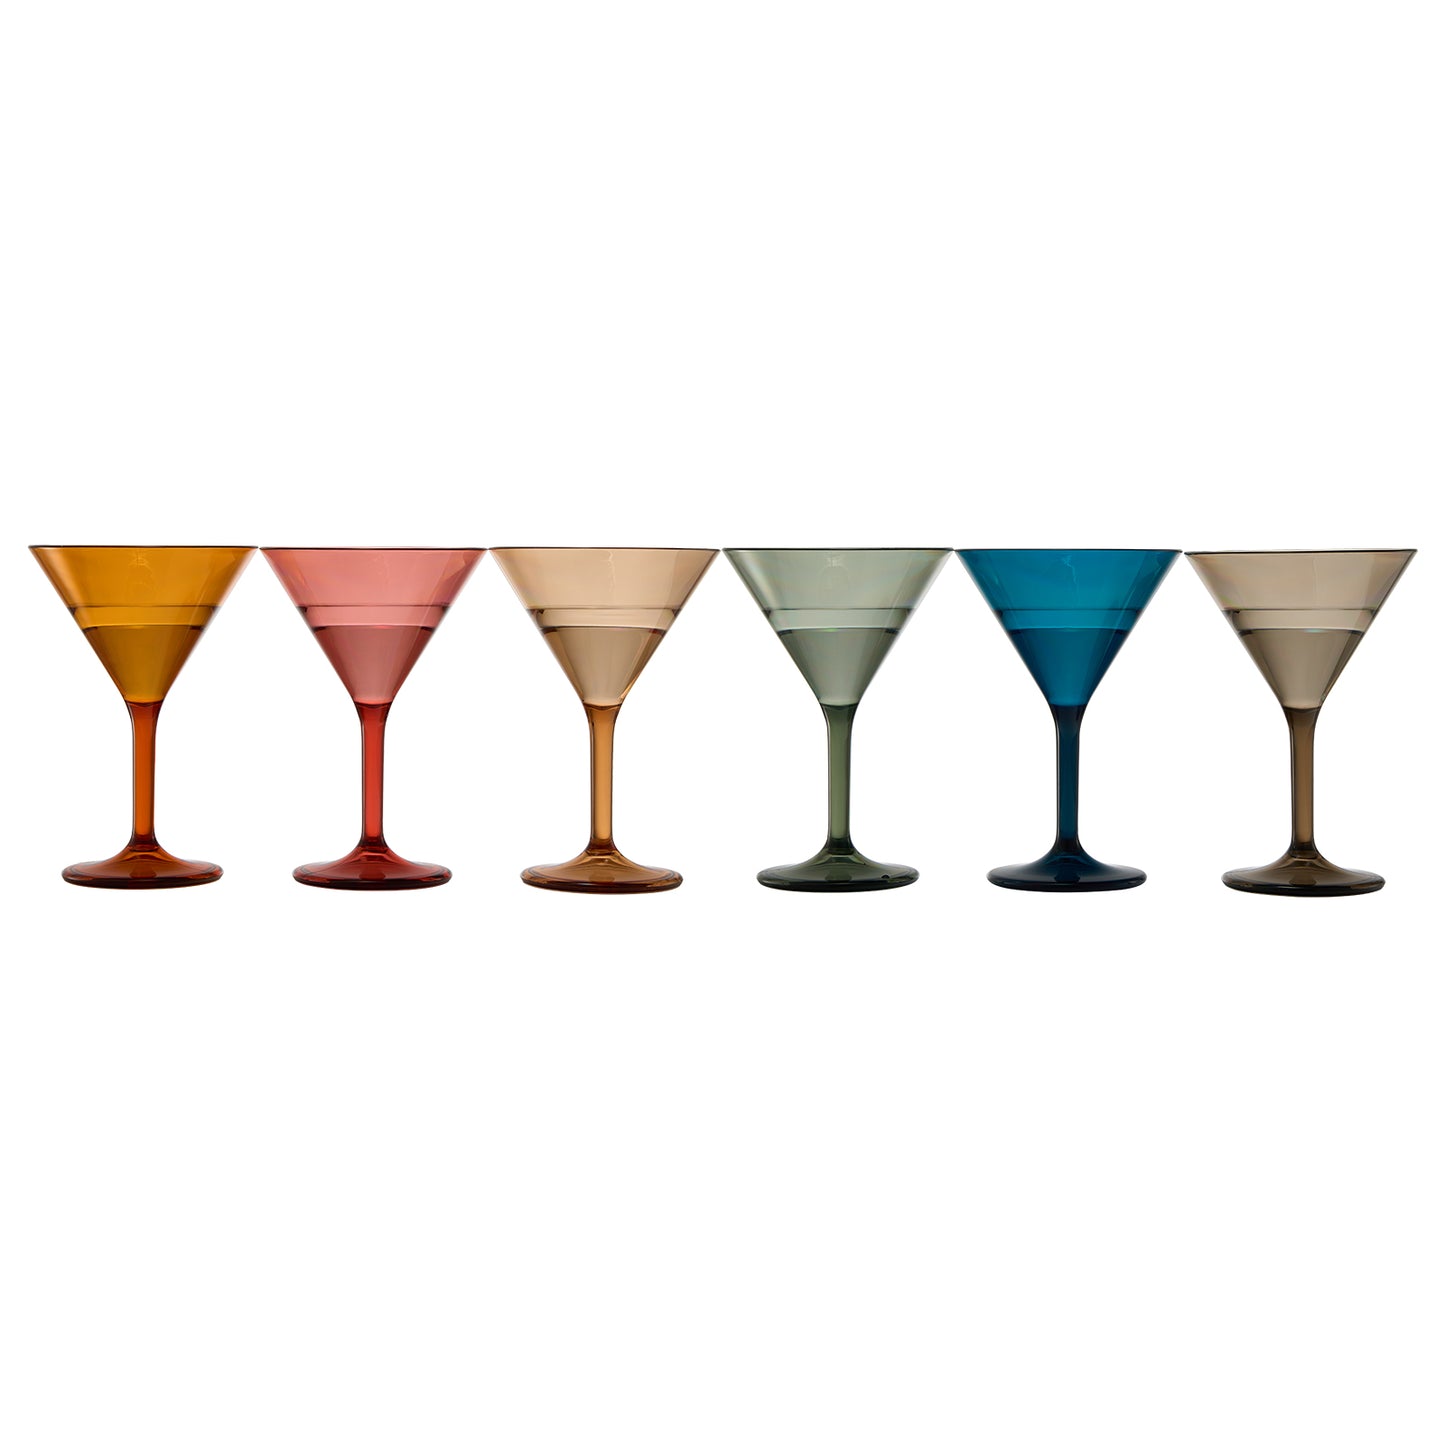 Eze Martini Glassware, Unbreakable Acrylic, Set of 6